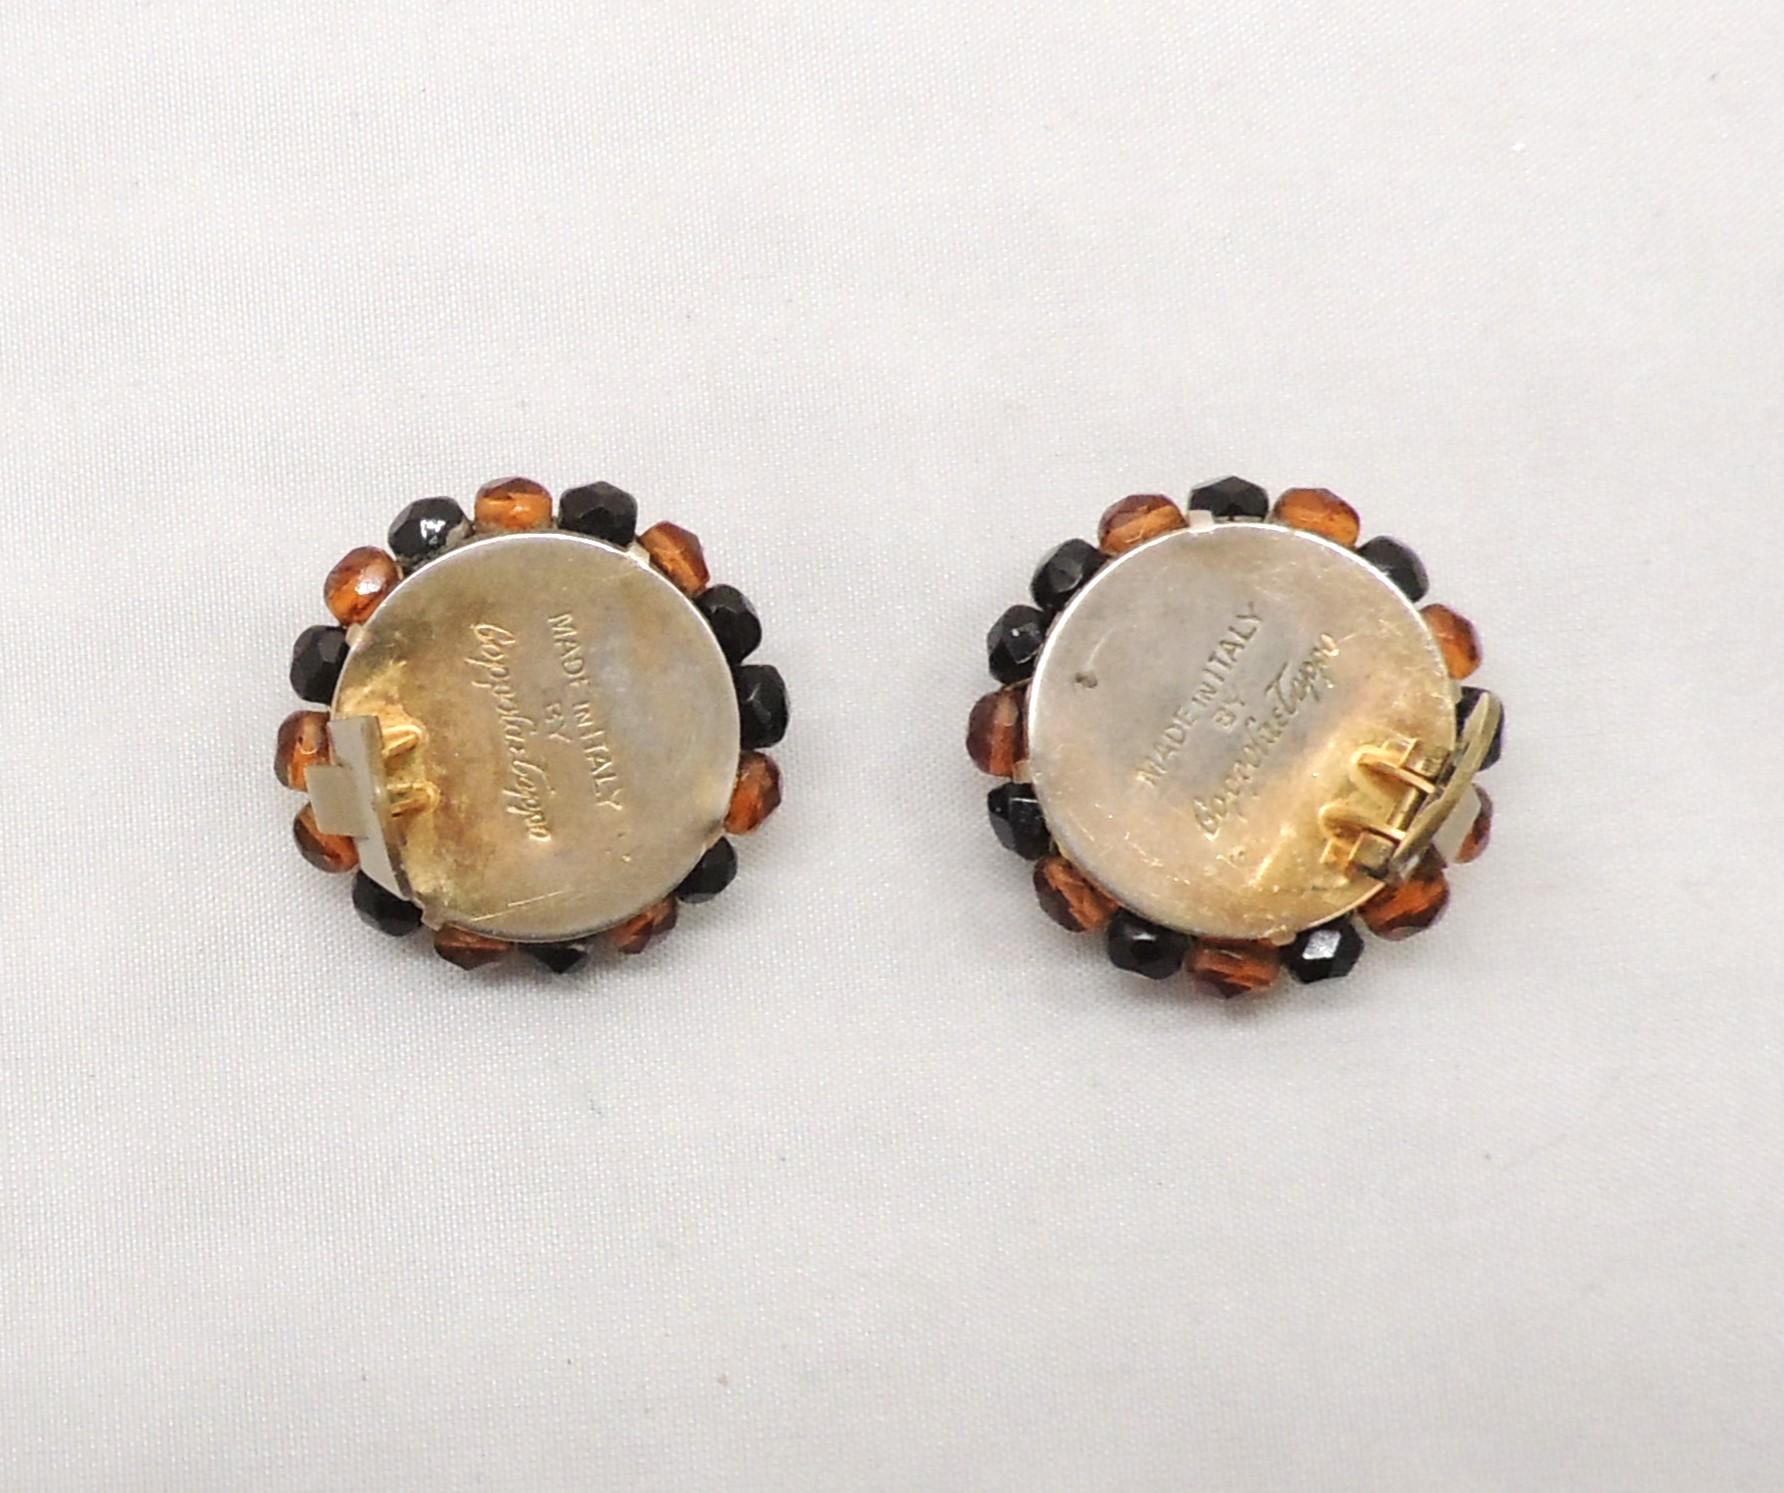 Boucles d'oreilles rondes des années 1950, en or, avec perles brunes et noires. Marqué 